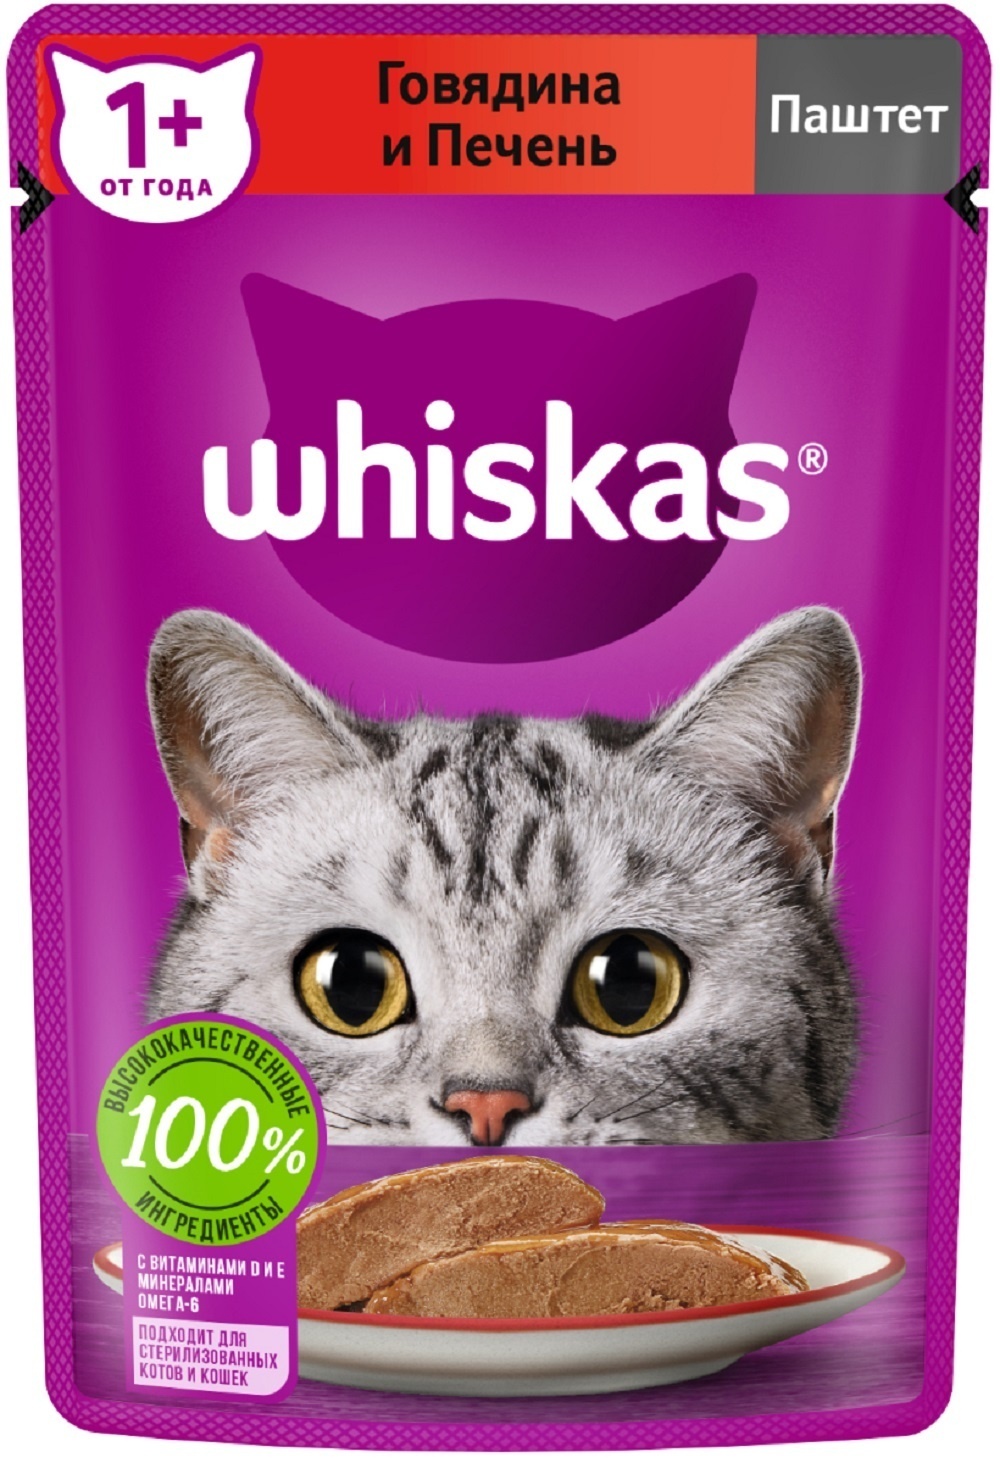 Whiskas влажный корм для кошек, паштет из говядины с печенью (75 г)